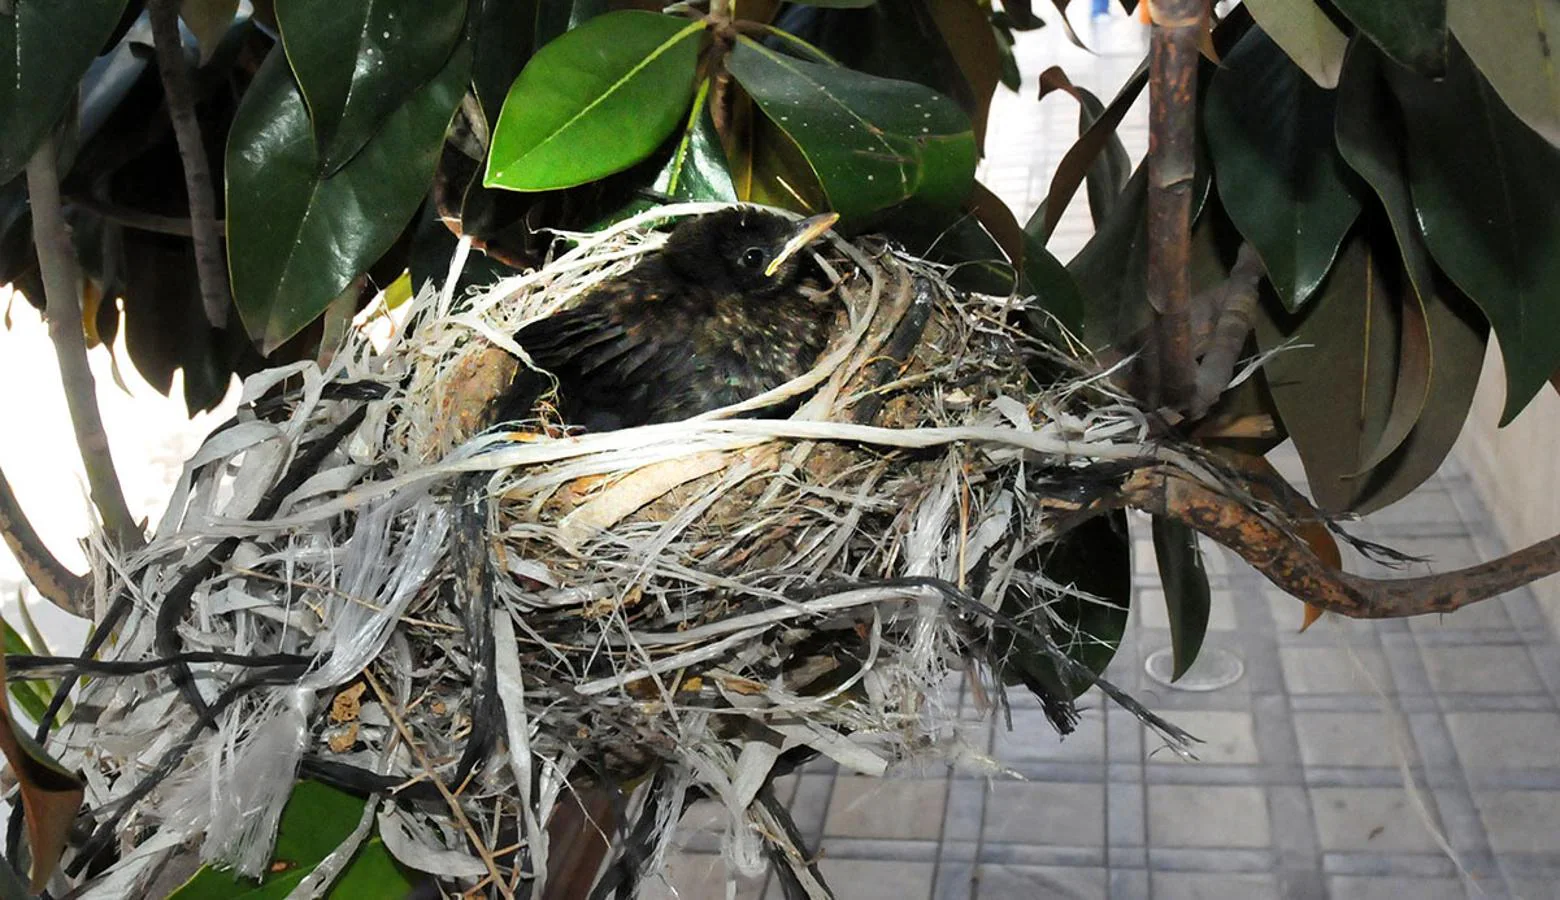 UN polluelo de mirlo crece en el nido construido con cuerdas, plásticos y residuos urbanos en un árbol ornamental de la plaza del Carmen, en Granada